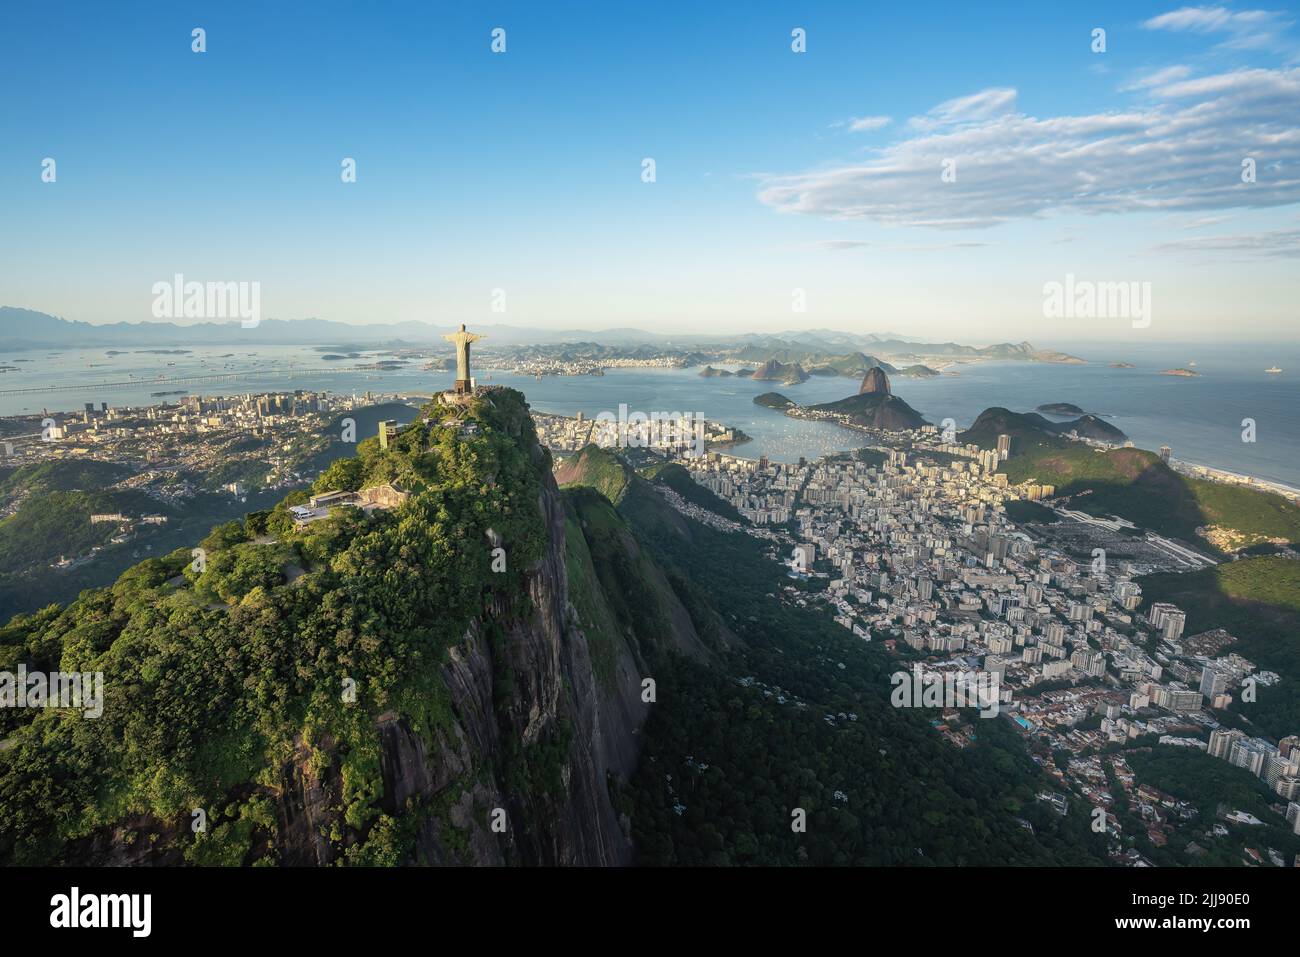 Luftaufnahme der Skyline von Rio mit Corcovado Mountain, Sugarloaf Mountain und Guanabara Bay - Rio de Janeiro, Brasilien Stockfoto